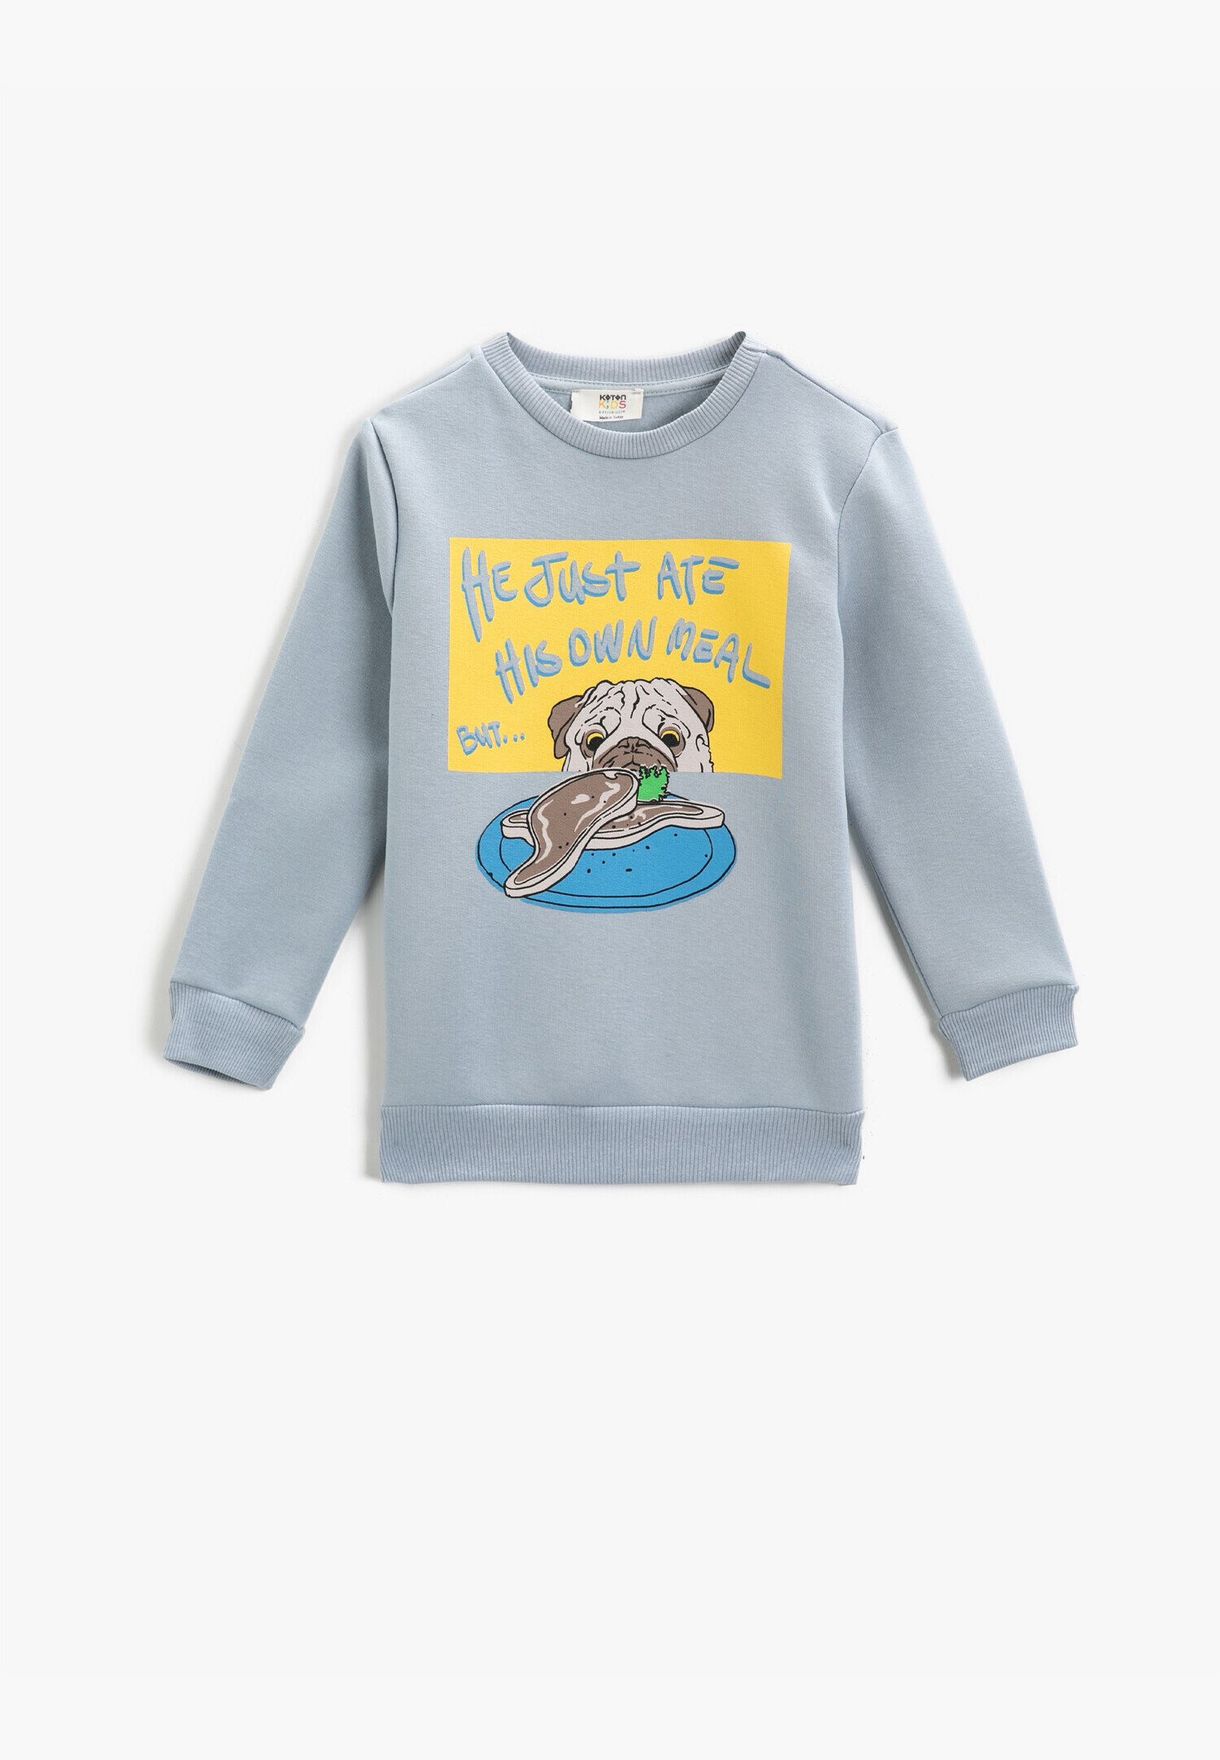 Dog Printed Long Sleeve Sweatshirt Crew Neck